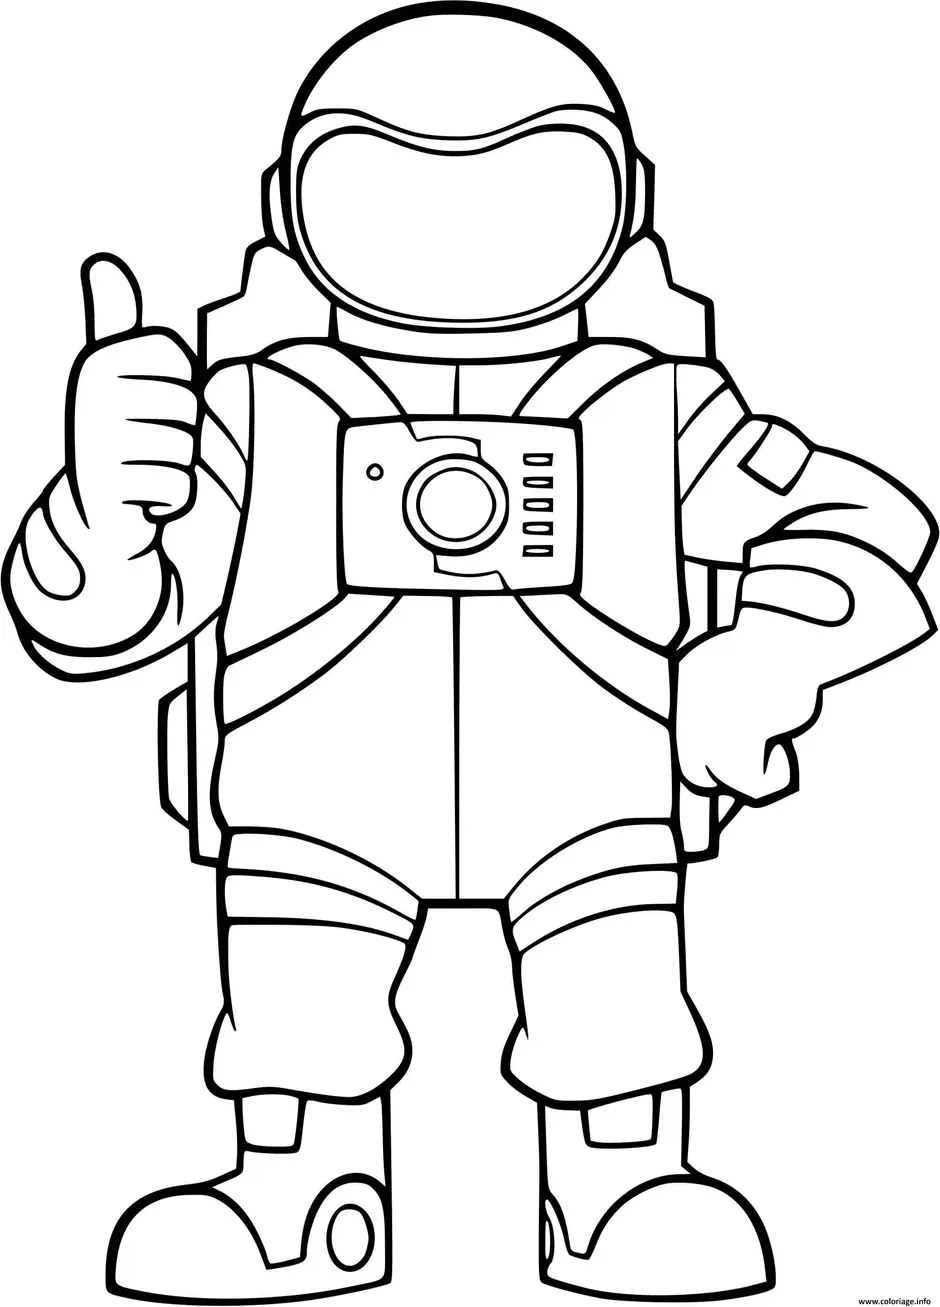 Распечатать космонавта для поделки. Космонавт раскраска для детей. Раскраска Космонавта в скафандре для детей. Скафандр раскраска для детей. Космонавт раскраска для малышей.